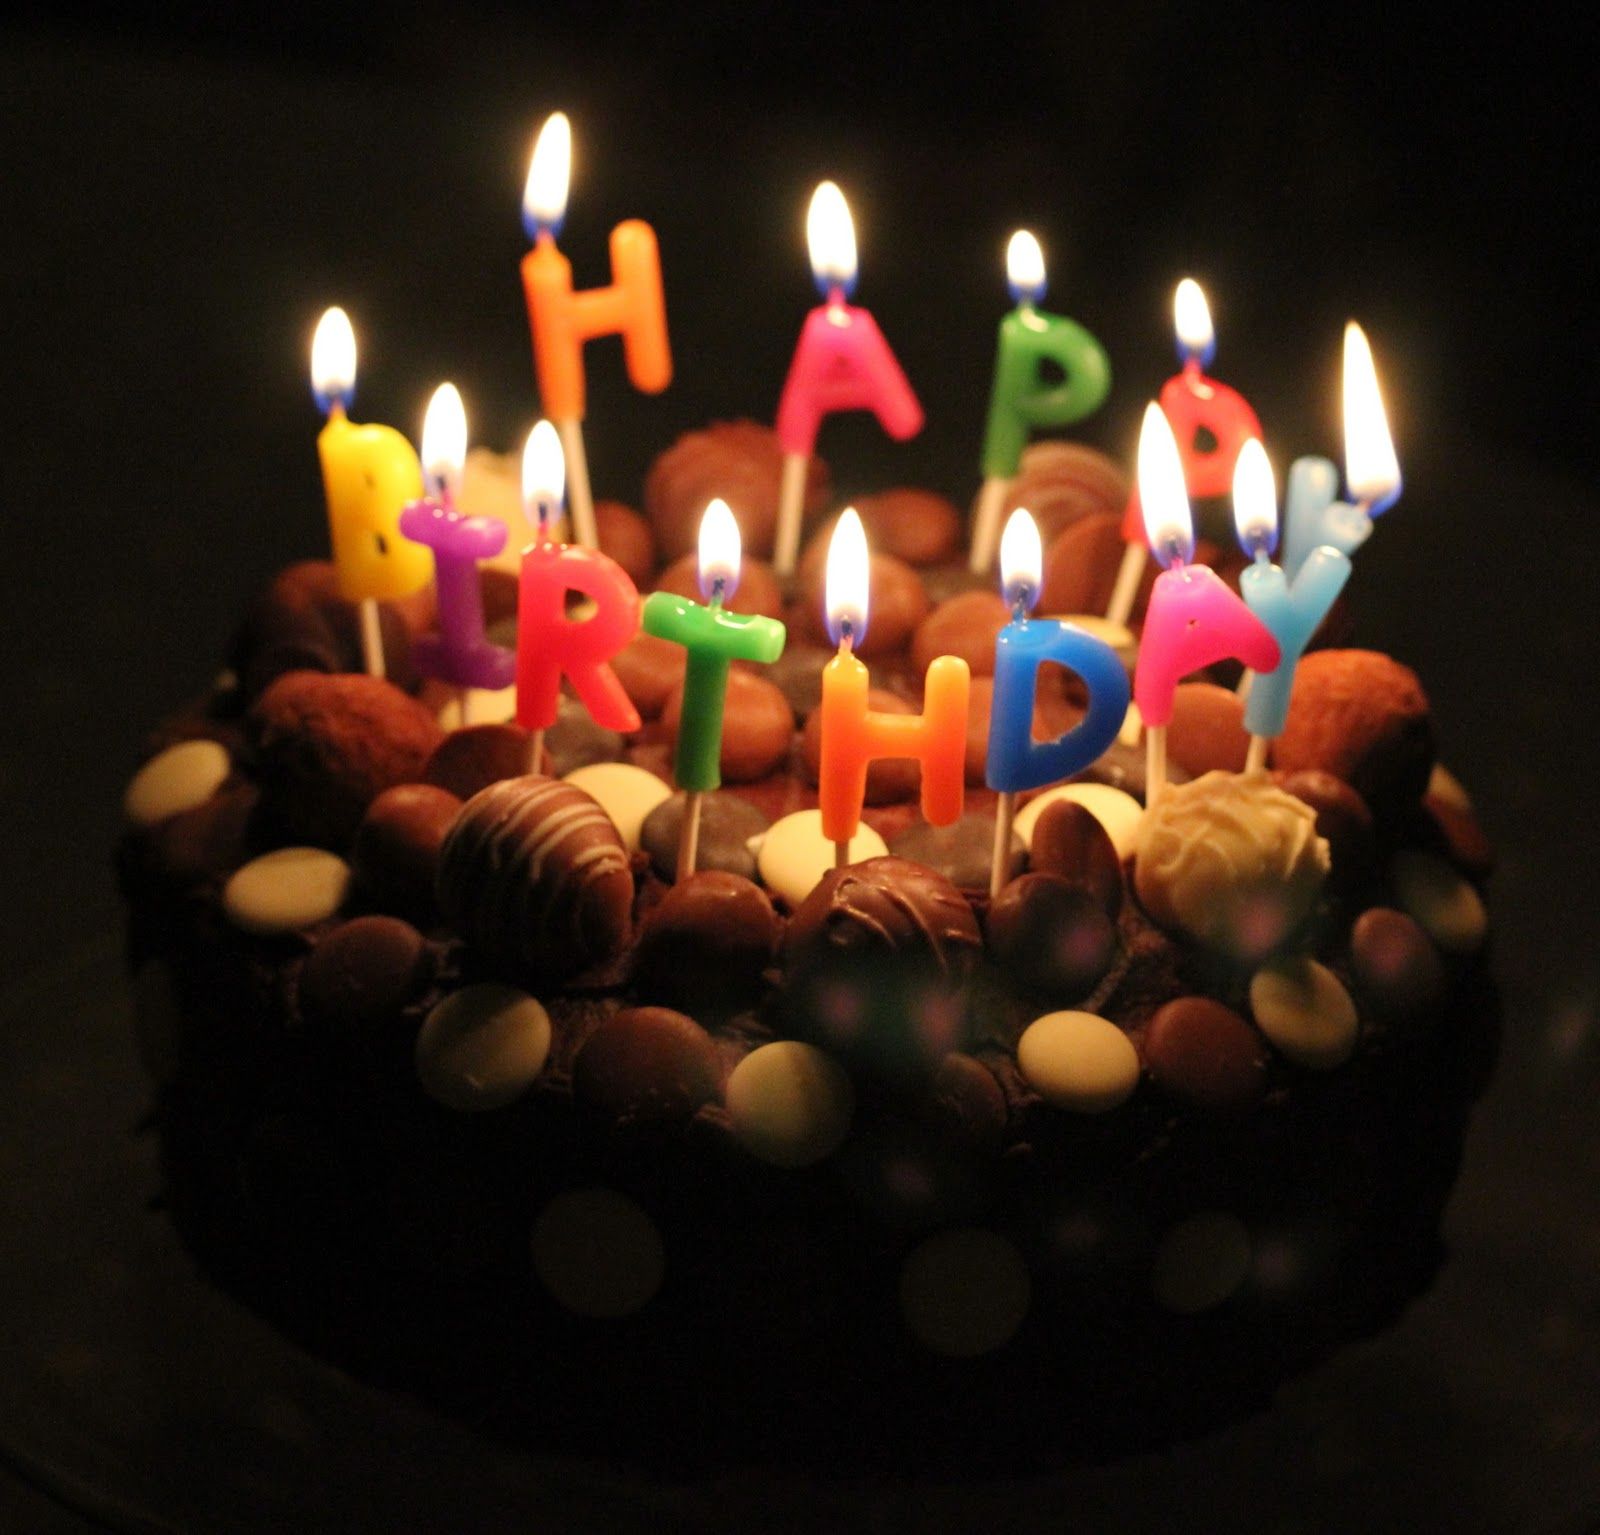 شیک ترین تصویر کیک تولد با شمع رنگی برای پروفایل 1402